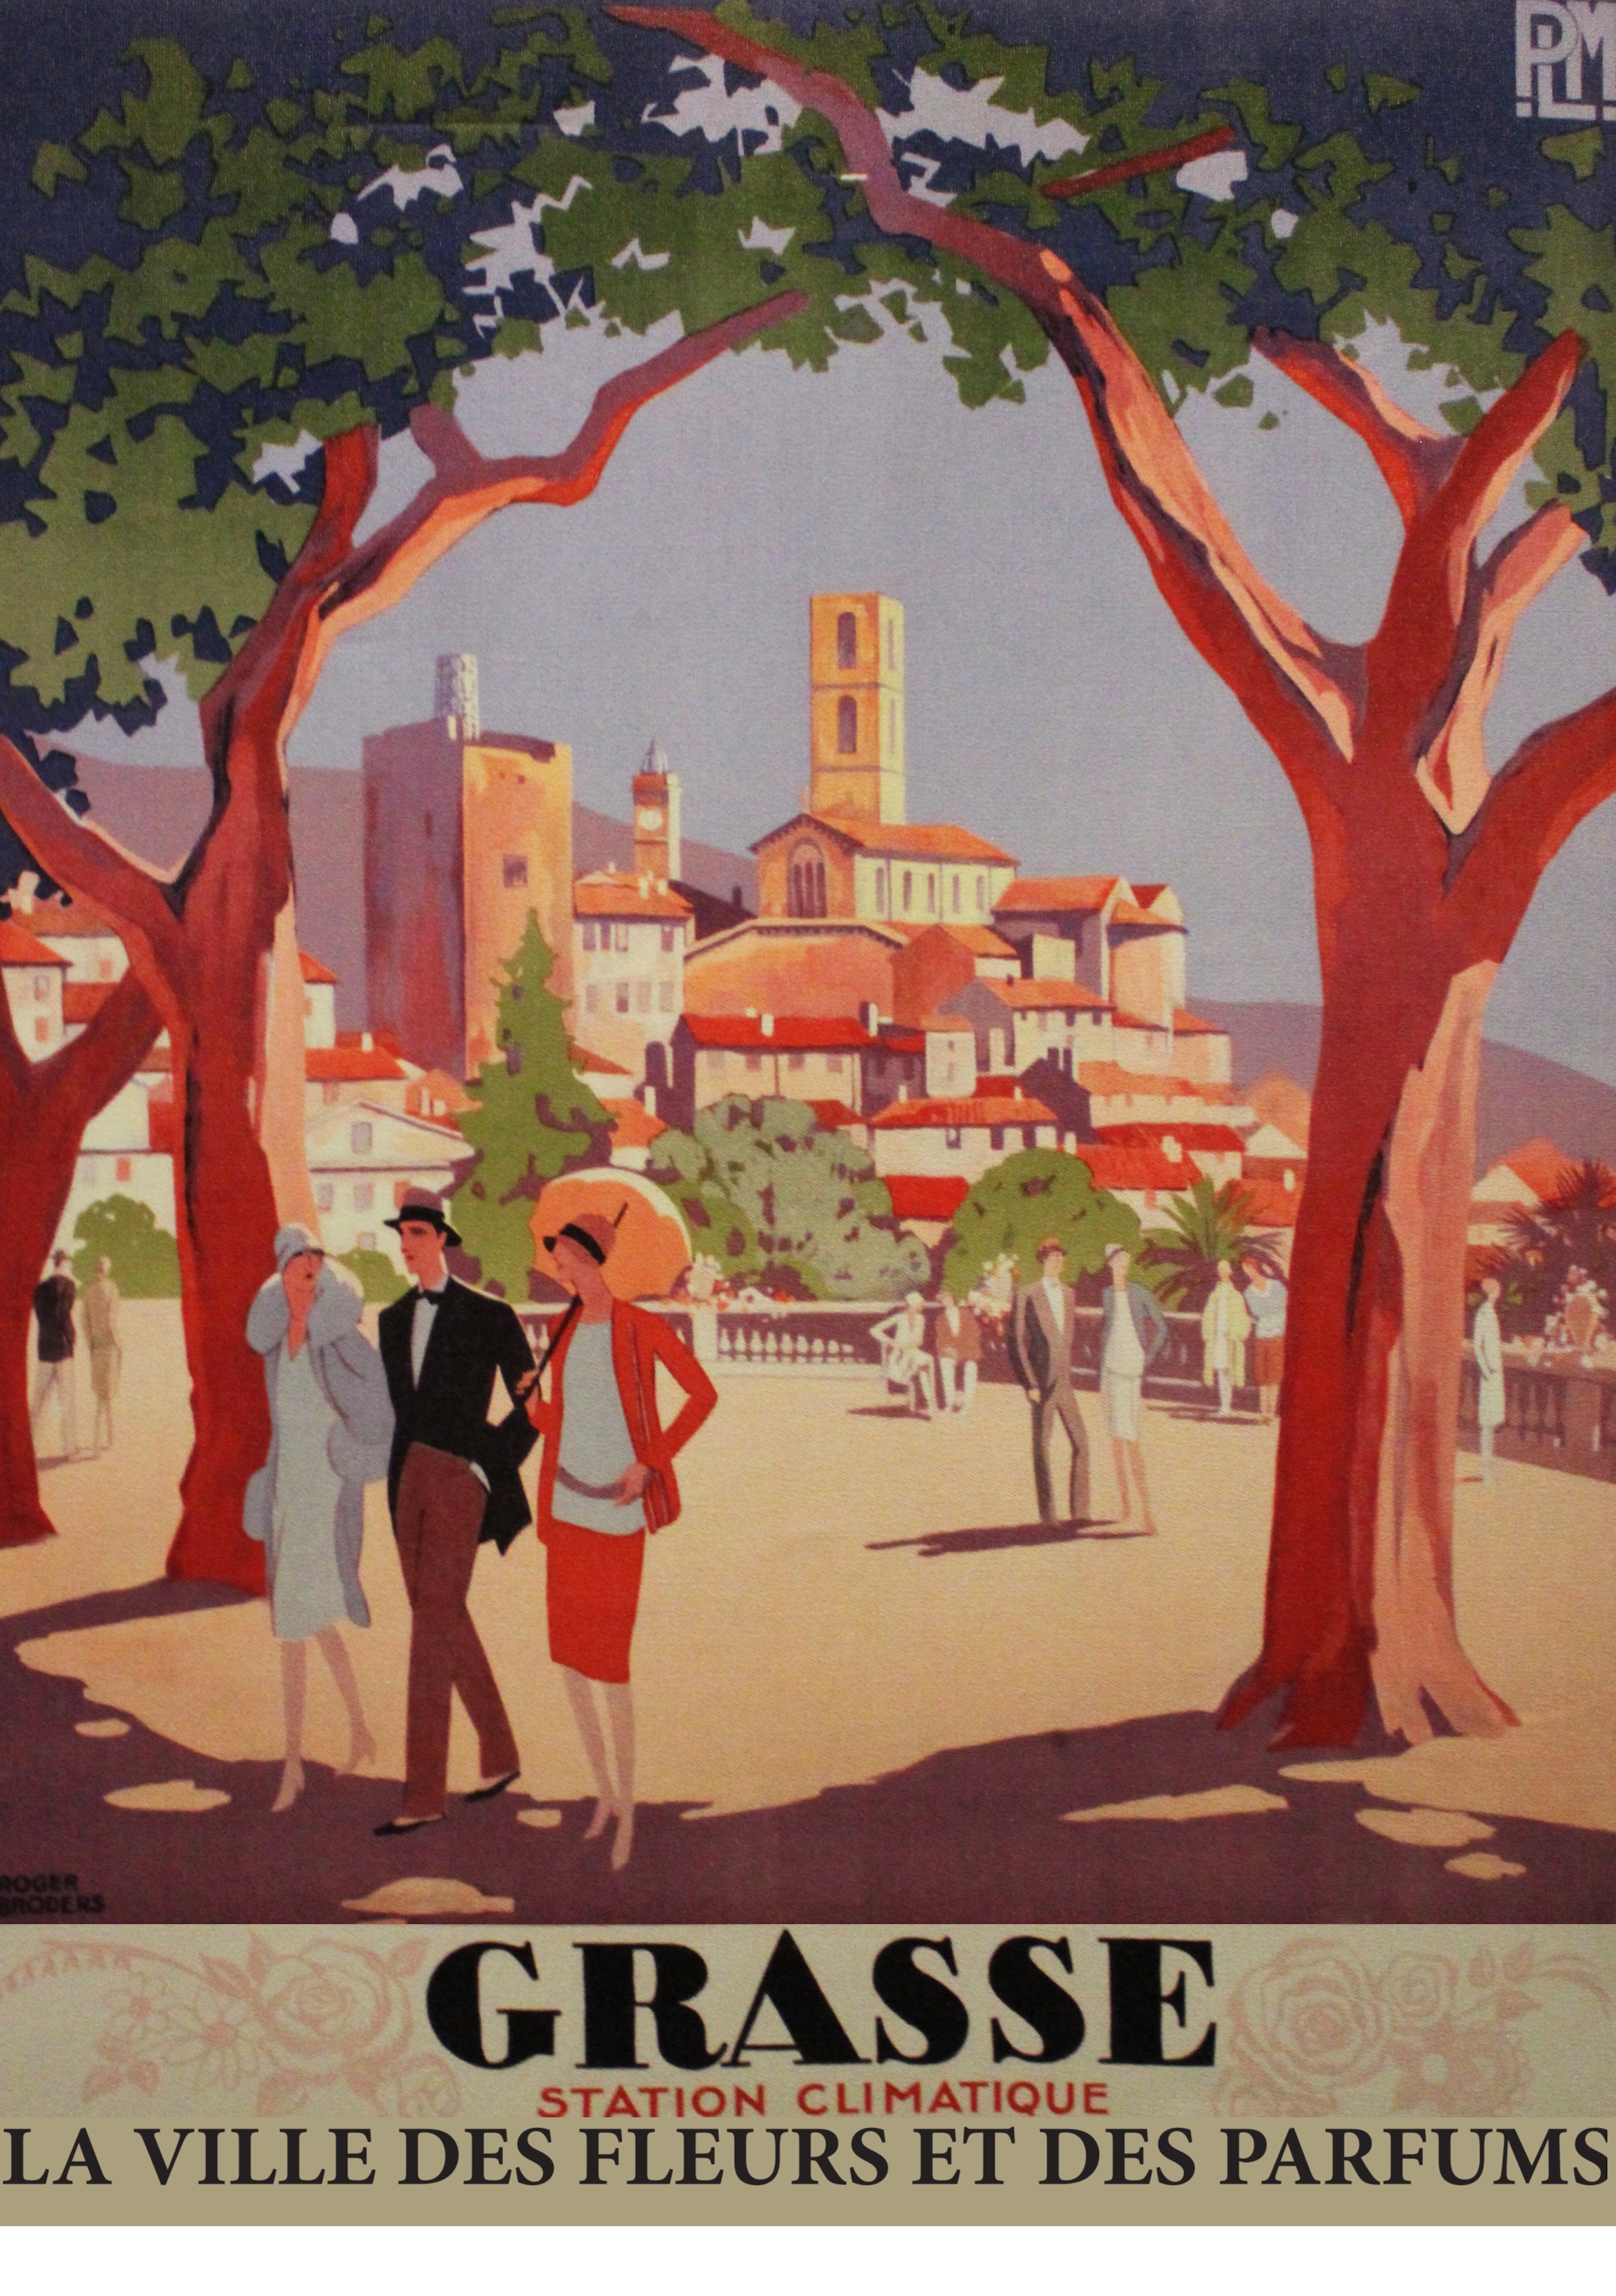 Grasse, stazione climatica, poster d'epoca - Foto: © OT Grasse